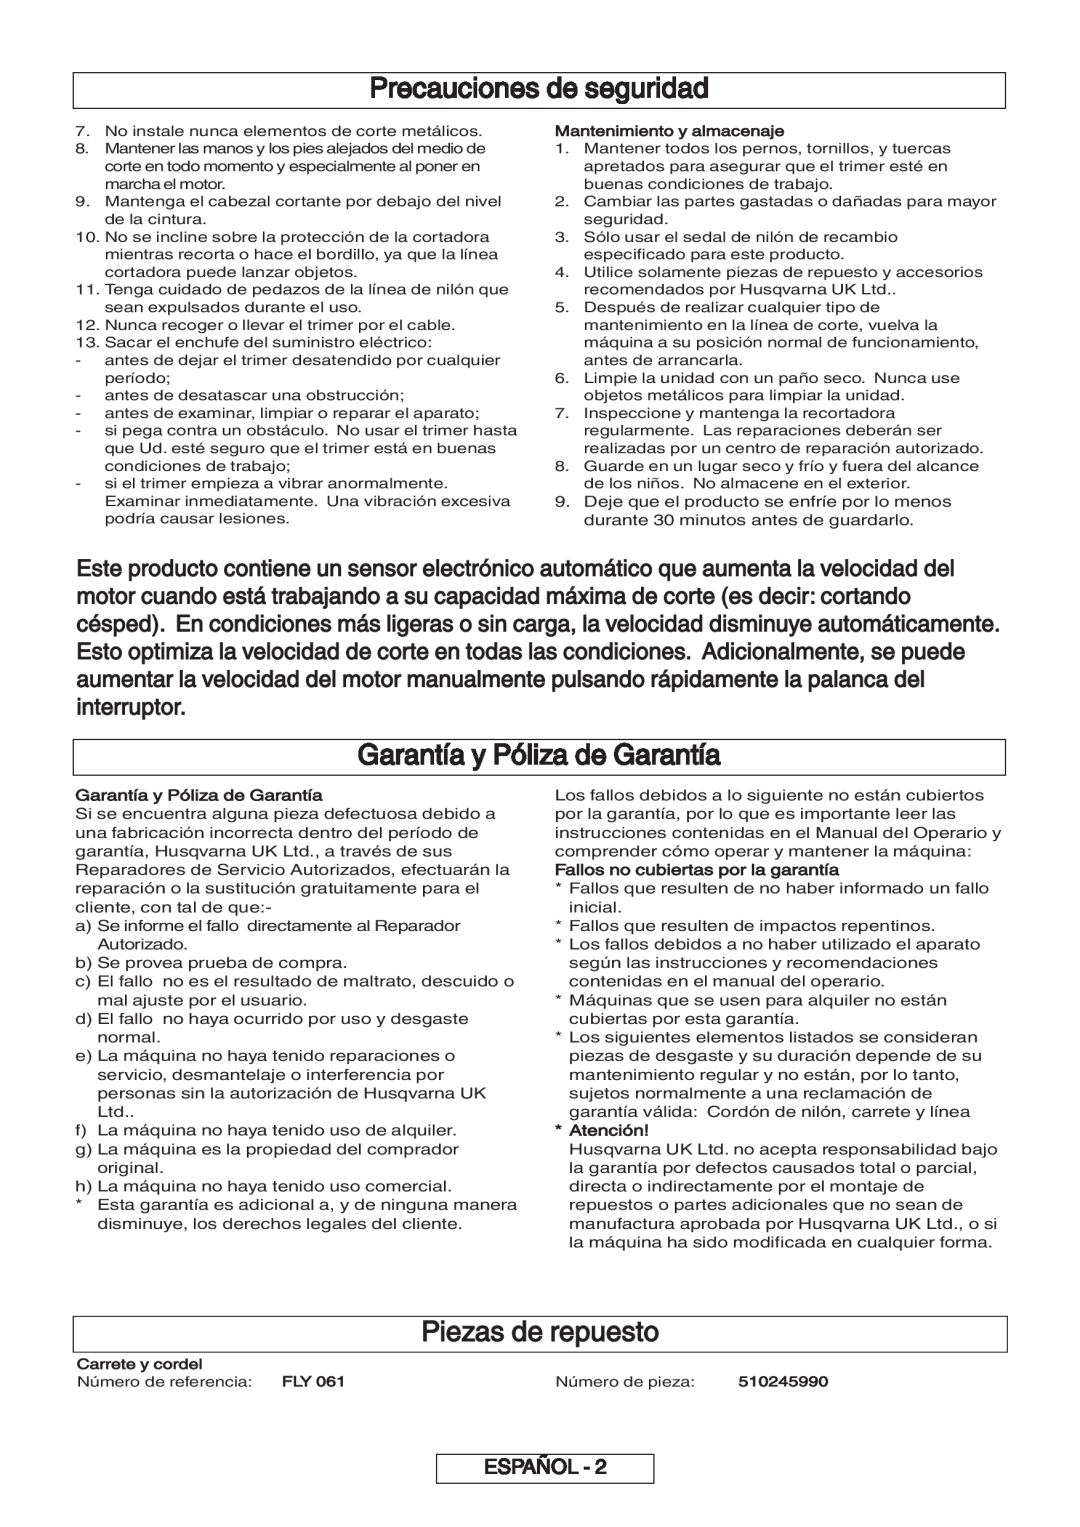 Flymo 600 HD manual Garantía y Póliza de Garantía, Piezas de repuesto, Precauciones de seguridad, Español, Atención 